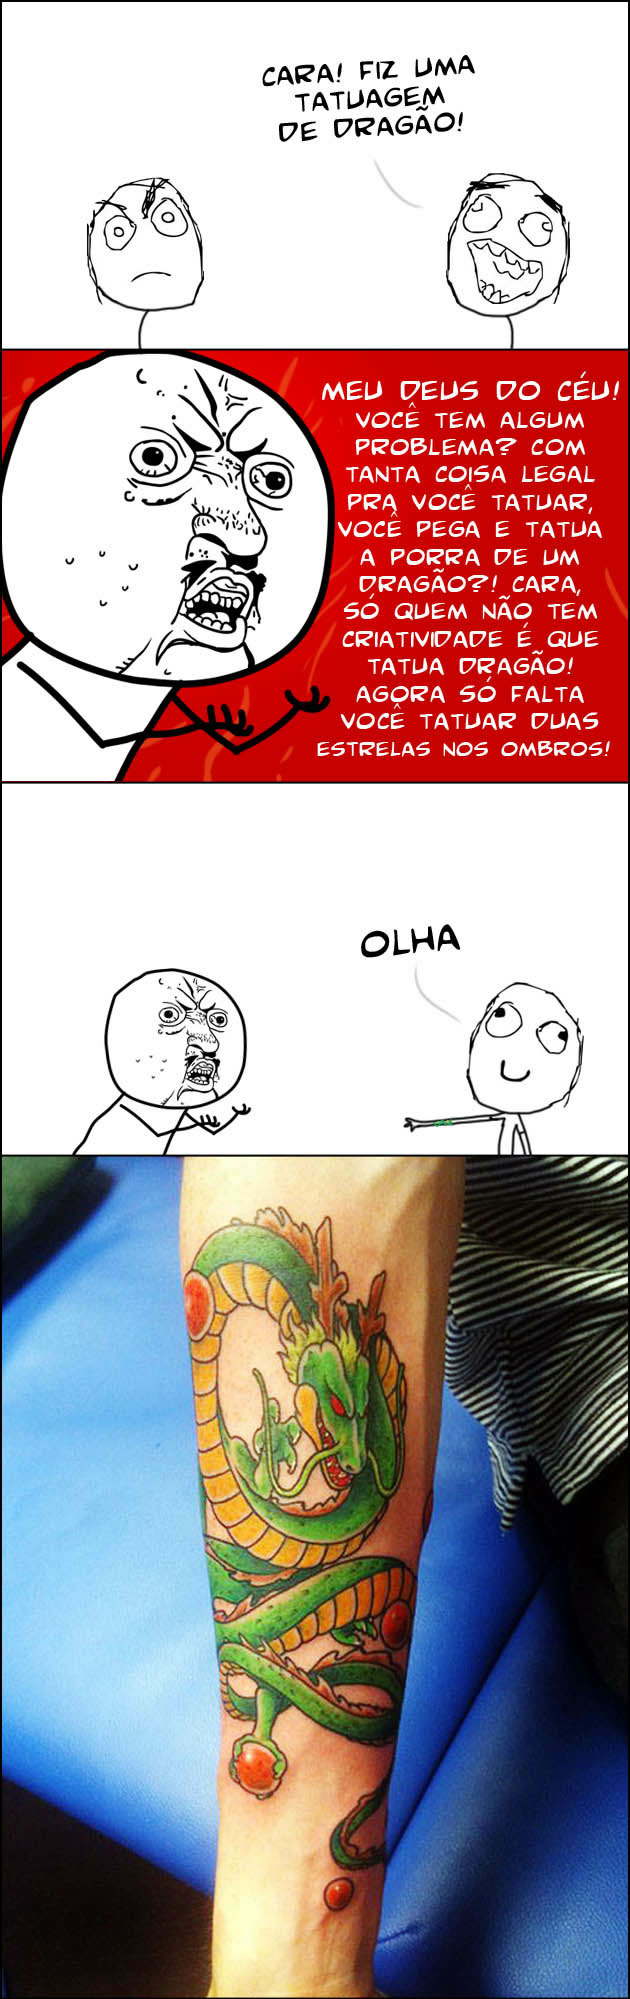 melhor tatoo Fiz uma tatuagem de dragão